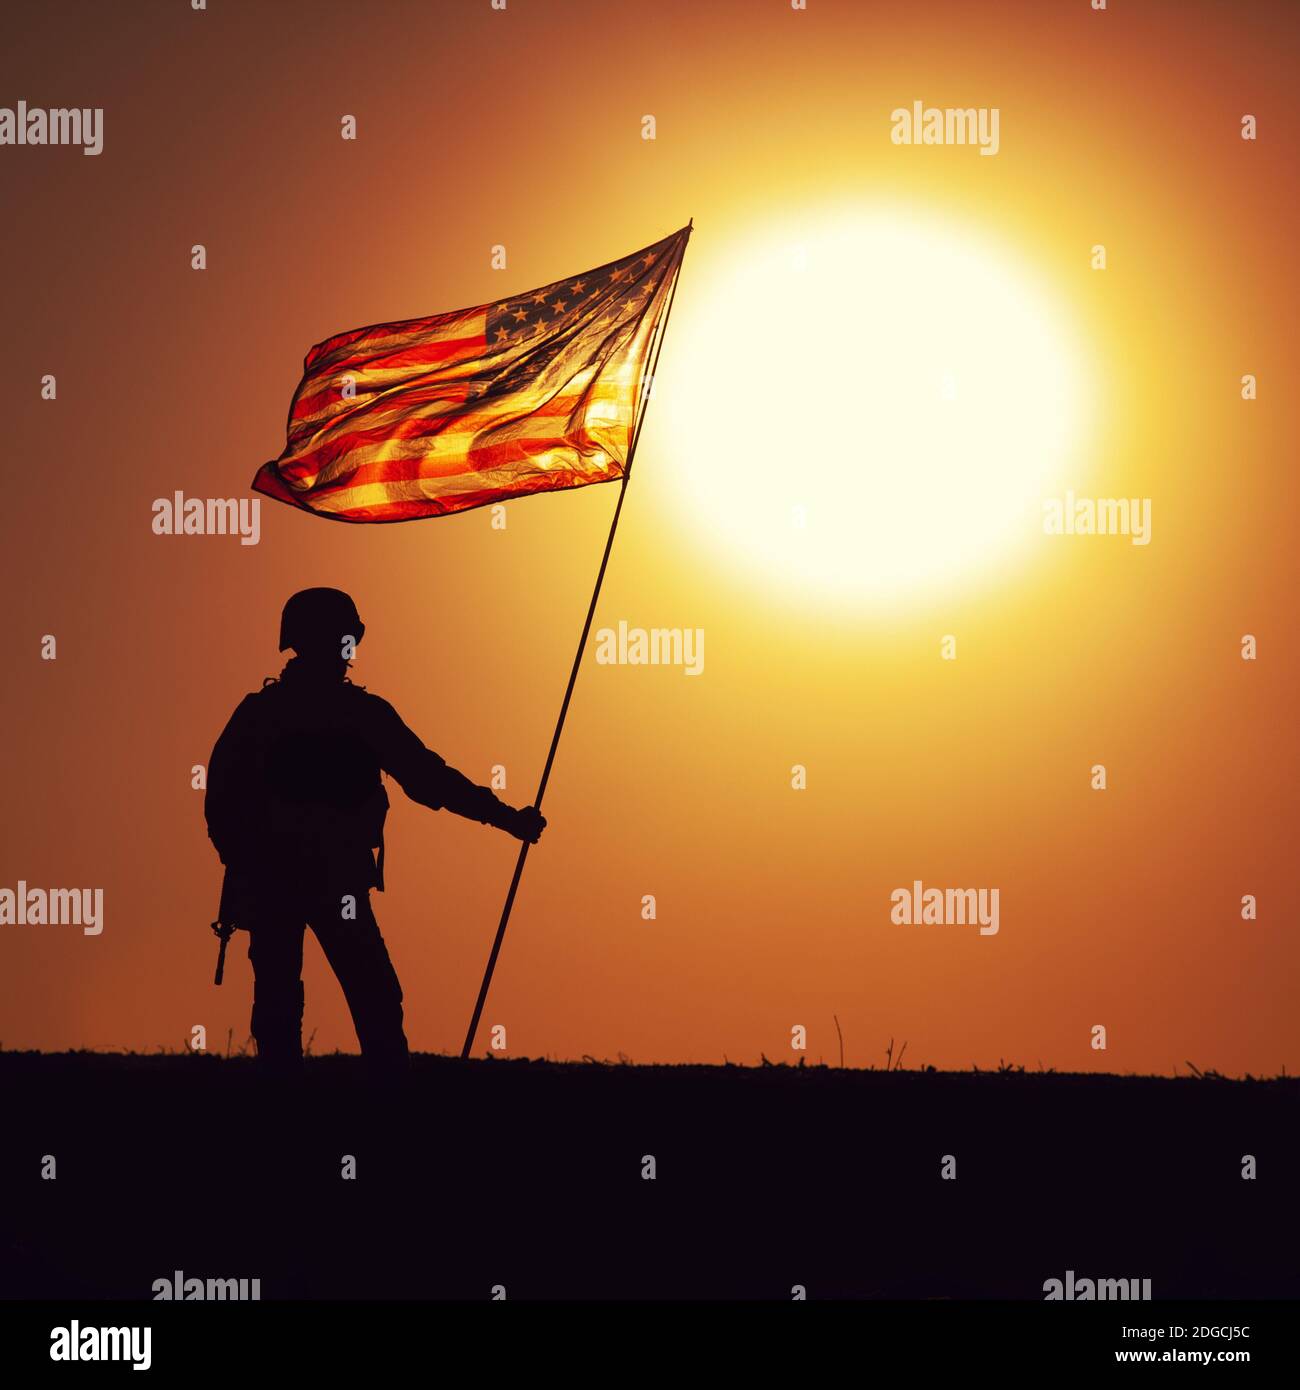 Silhouette del soldato di fanteria dell'esercito degli Stati Uniti, il combattente del corpo dei Marines degli Stati Uniti in piedi all'orizzonte del tramonto con la bandiera nazionale degli Stati Uniti sventolante. Eroismo dei soldati e vittoria in battaglia, onorando gli eroi caduti Foto Stock